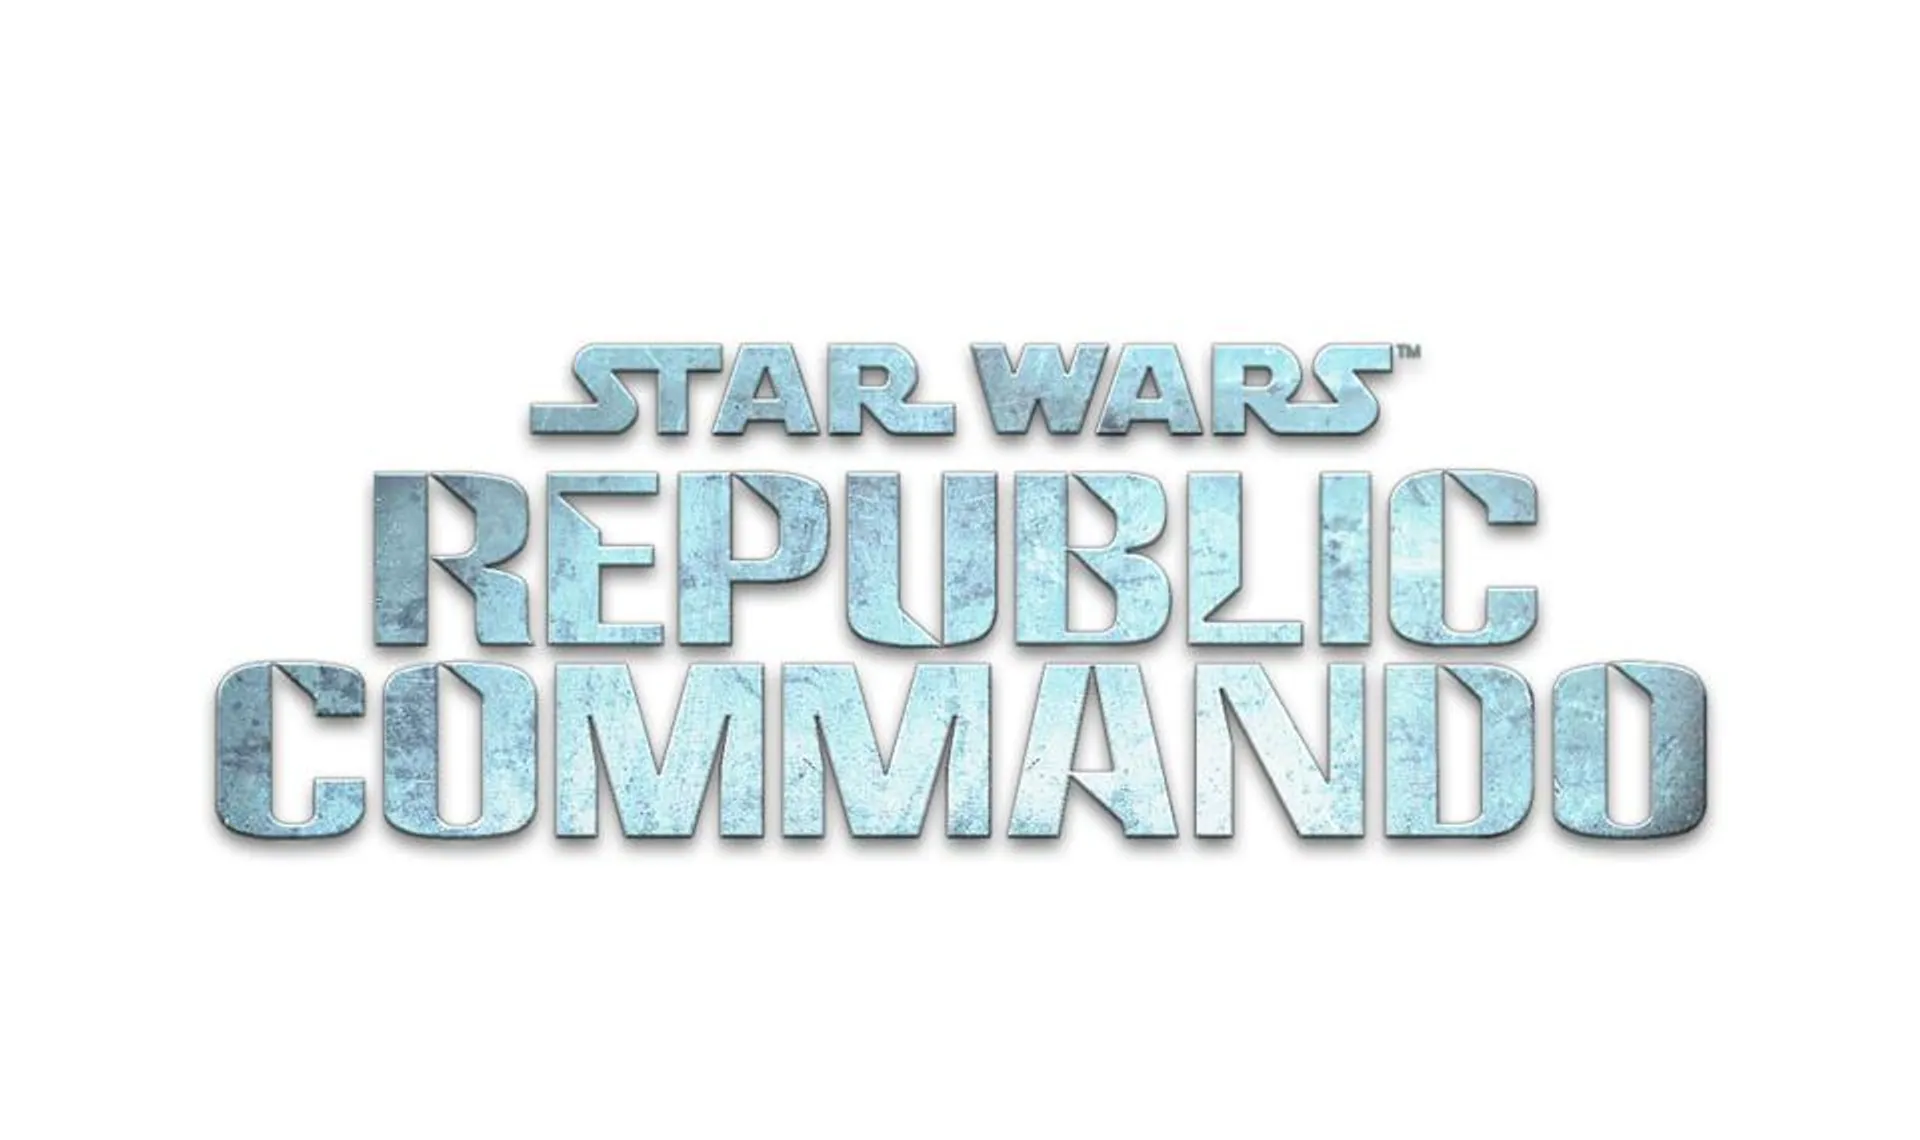 STAR WARS™ Republic Commando